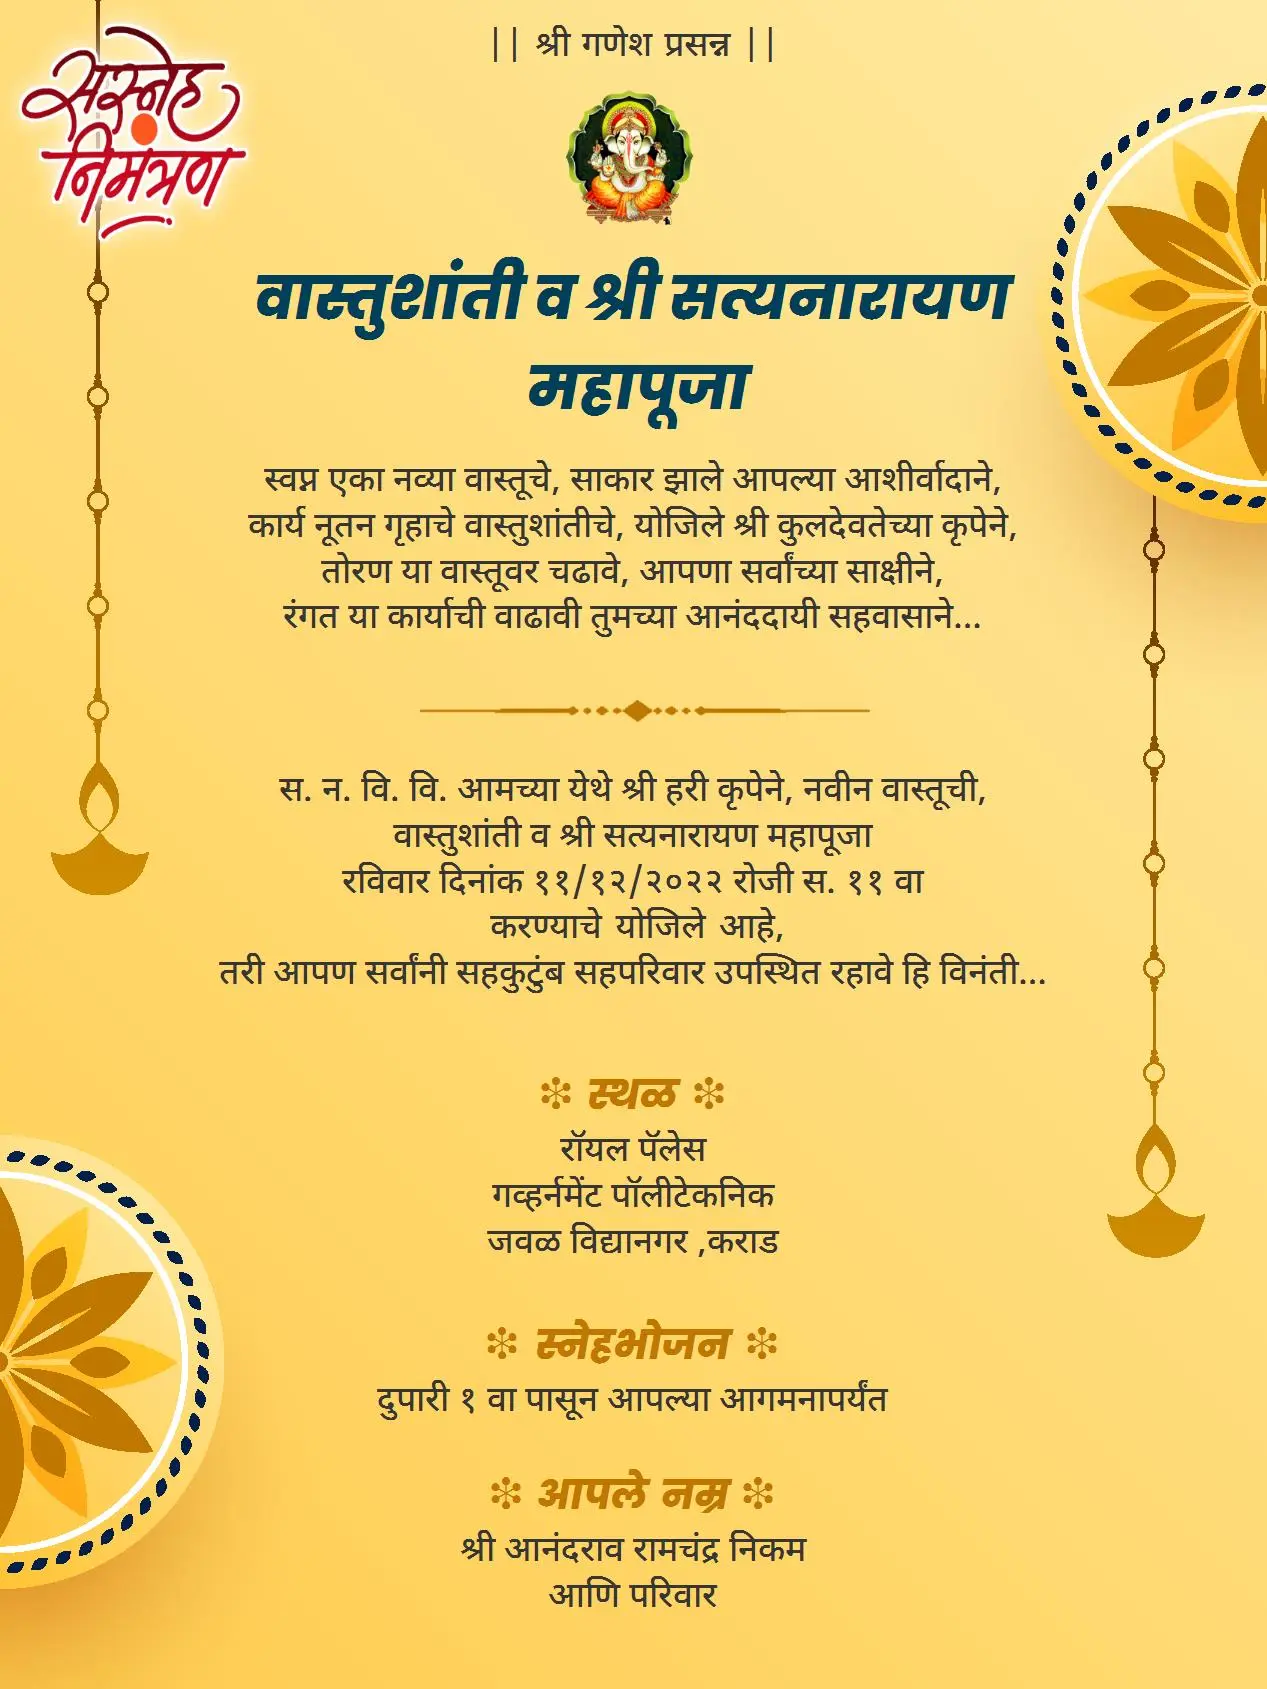 Gruhpravesh vastu shanti  invitation card in marathi